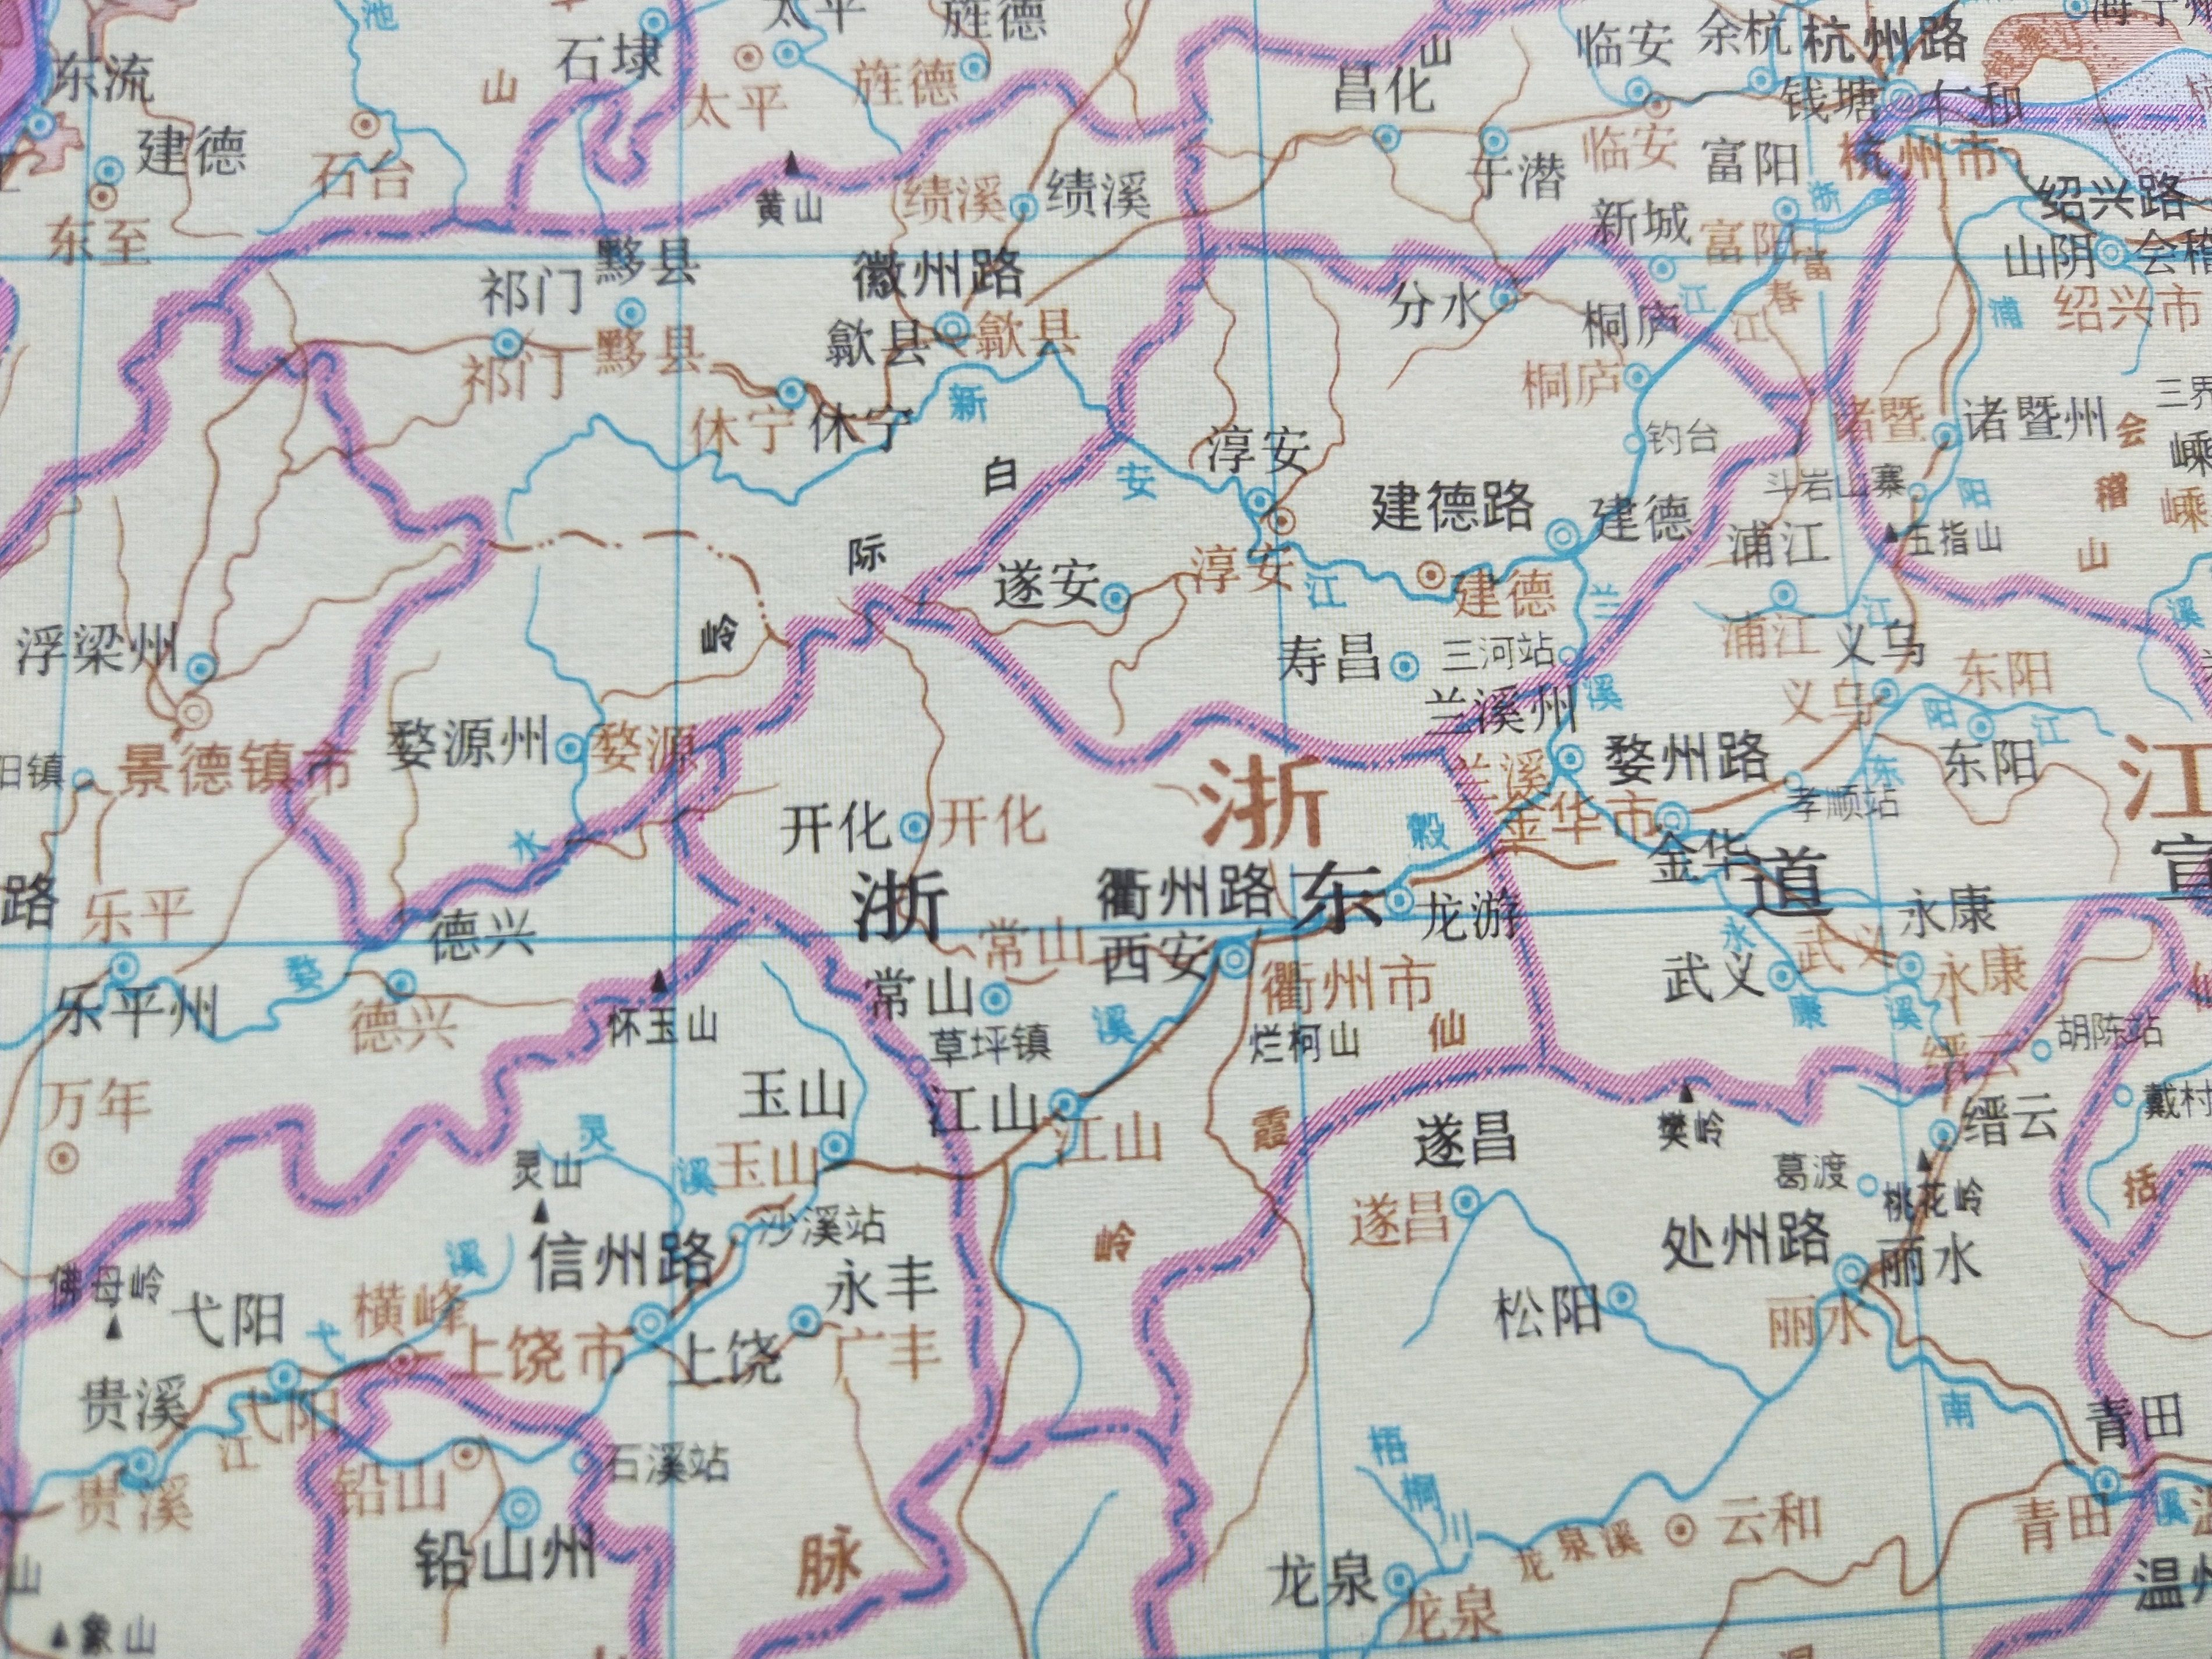 古地名演变:浙江衢州古地名及区划演变过程